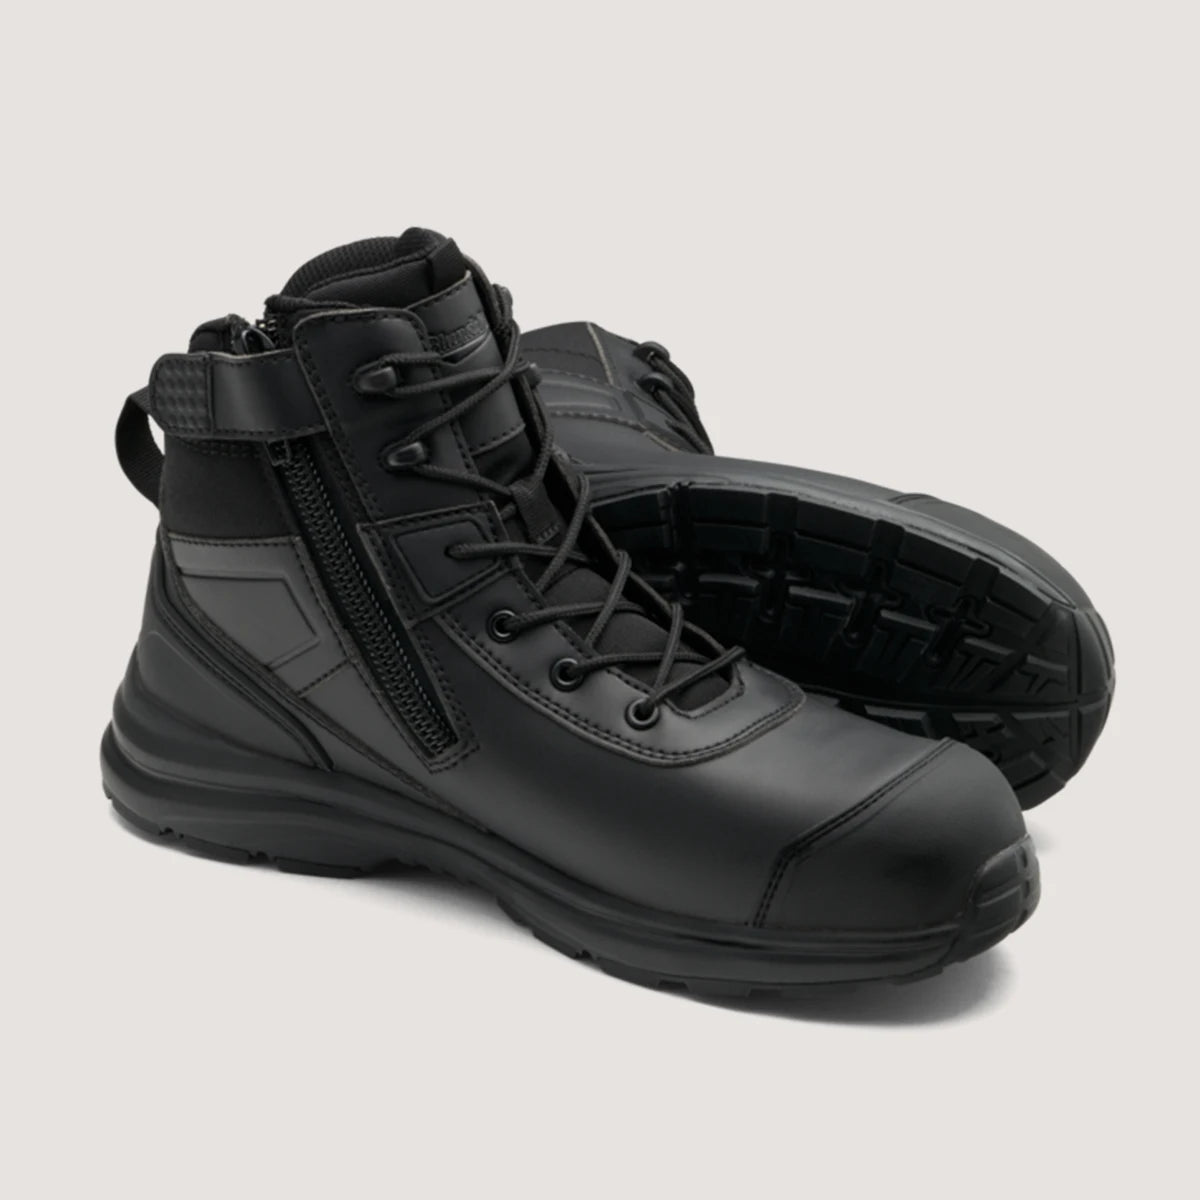 Blundstone 797 Lightweight Hiker Safety Boot-Black